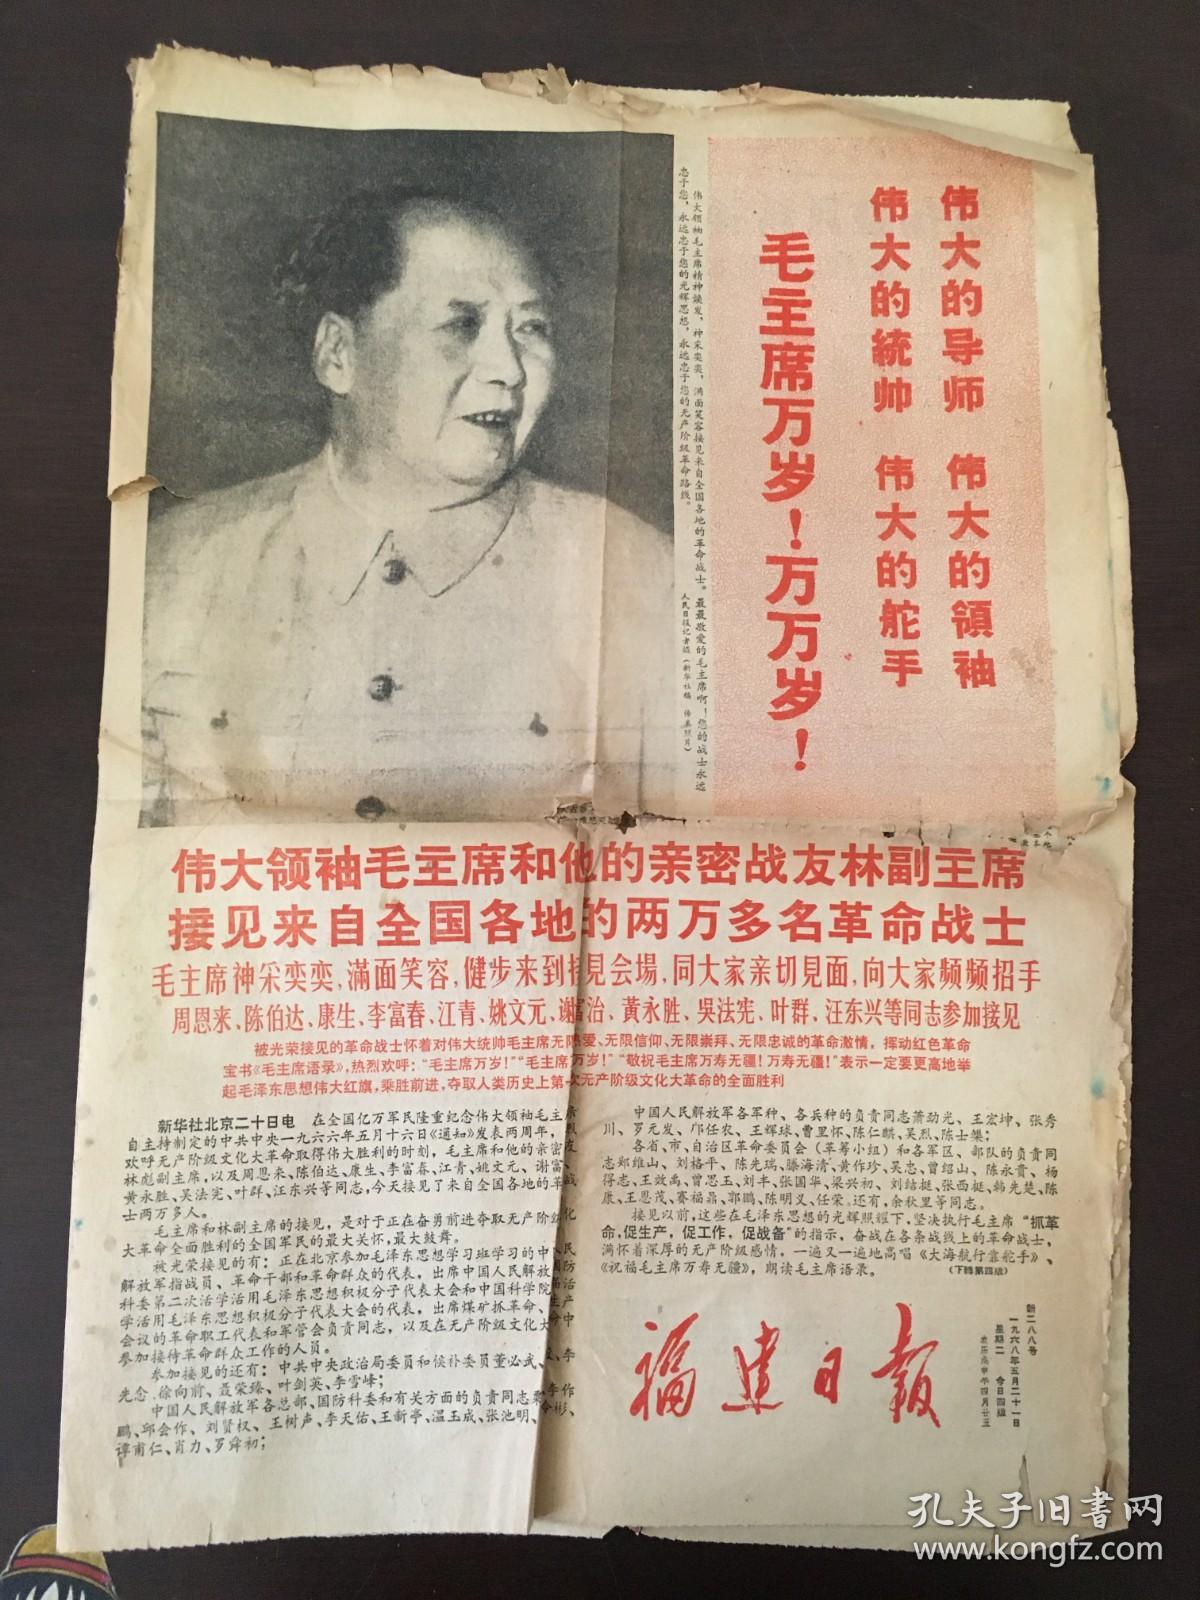 福建日报 1958年5月21日 毛林合影